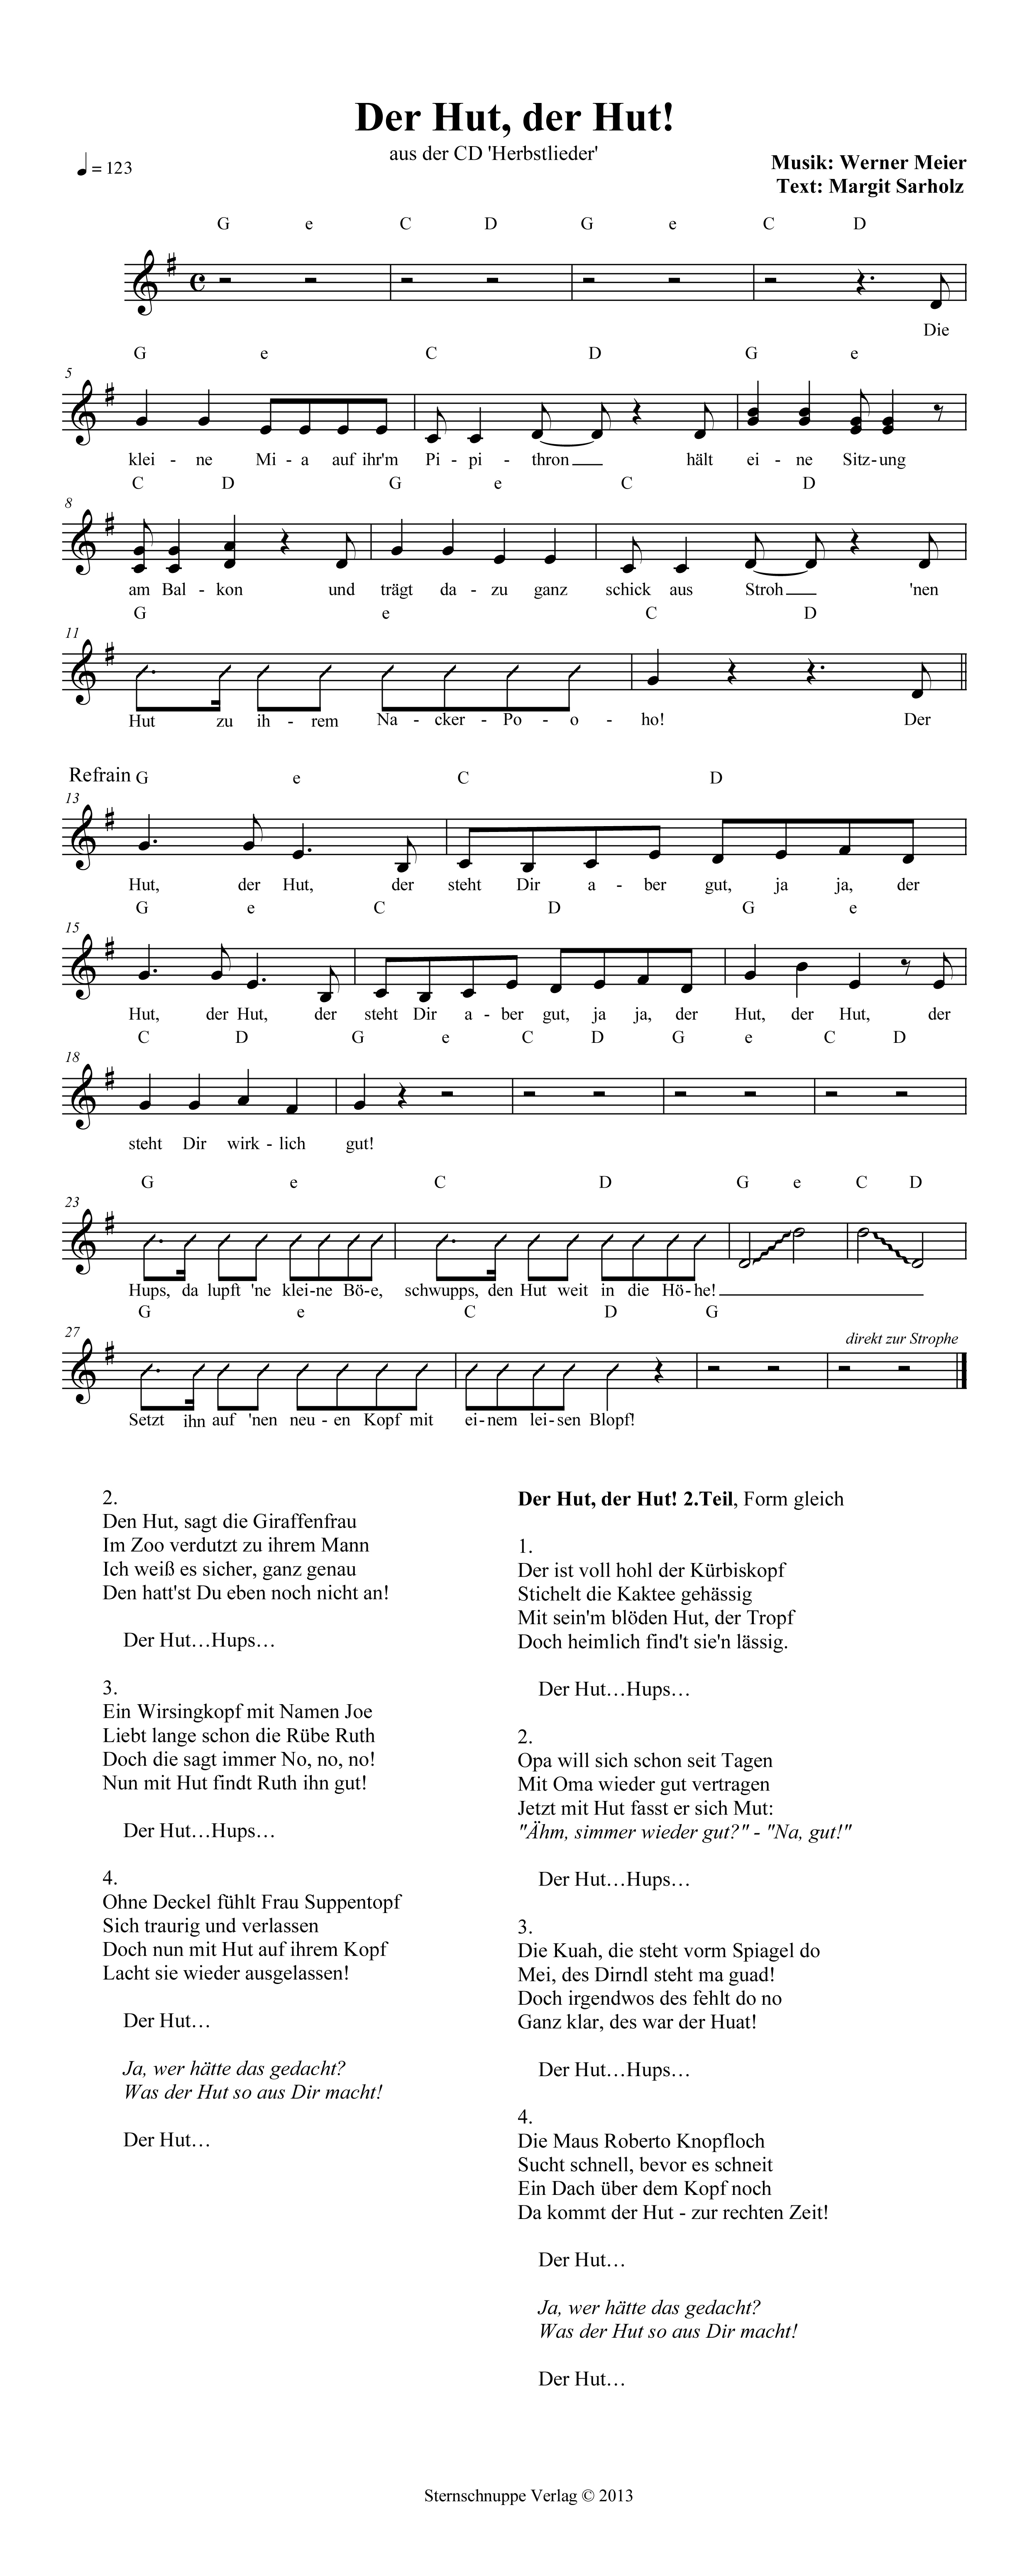 Liedtext, Akkorde und Noten vom Kinderlied Der Hut, der Hut! (Zweiter Flug)